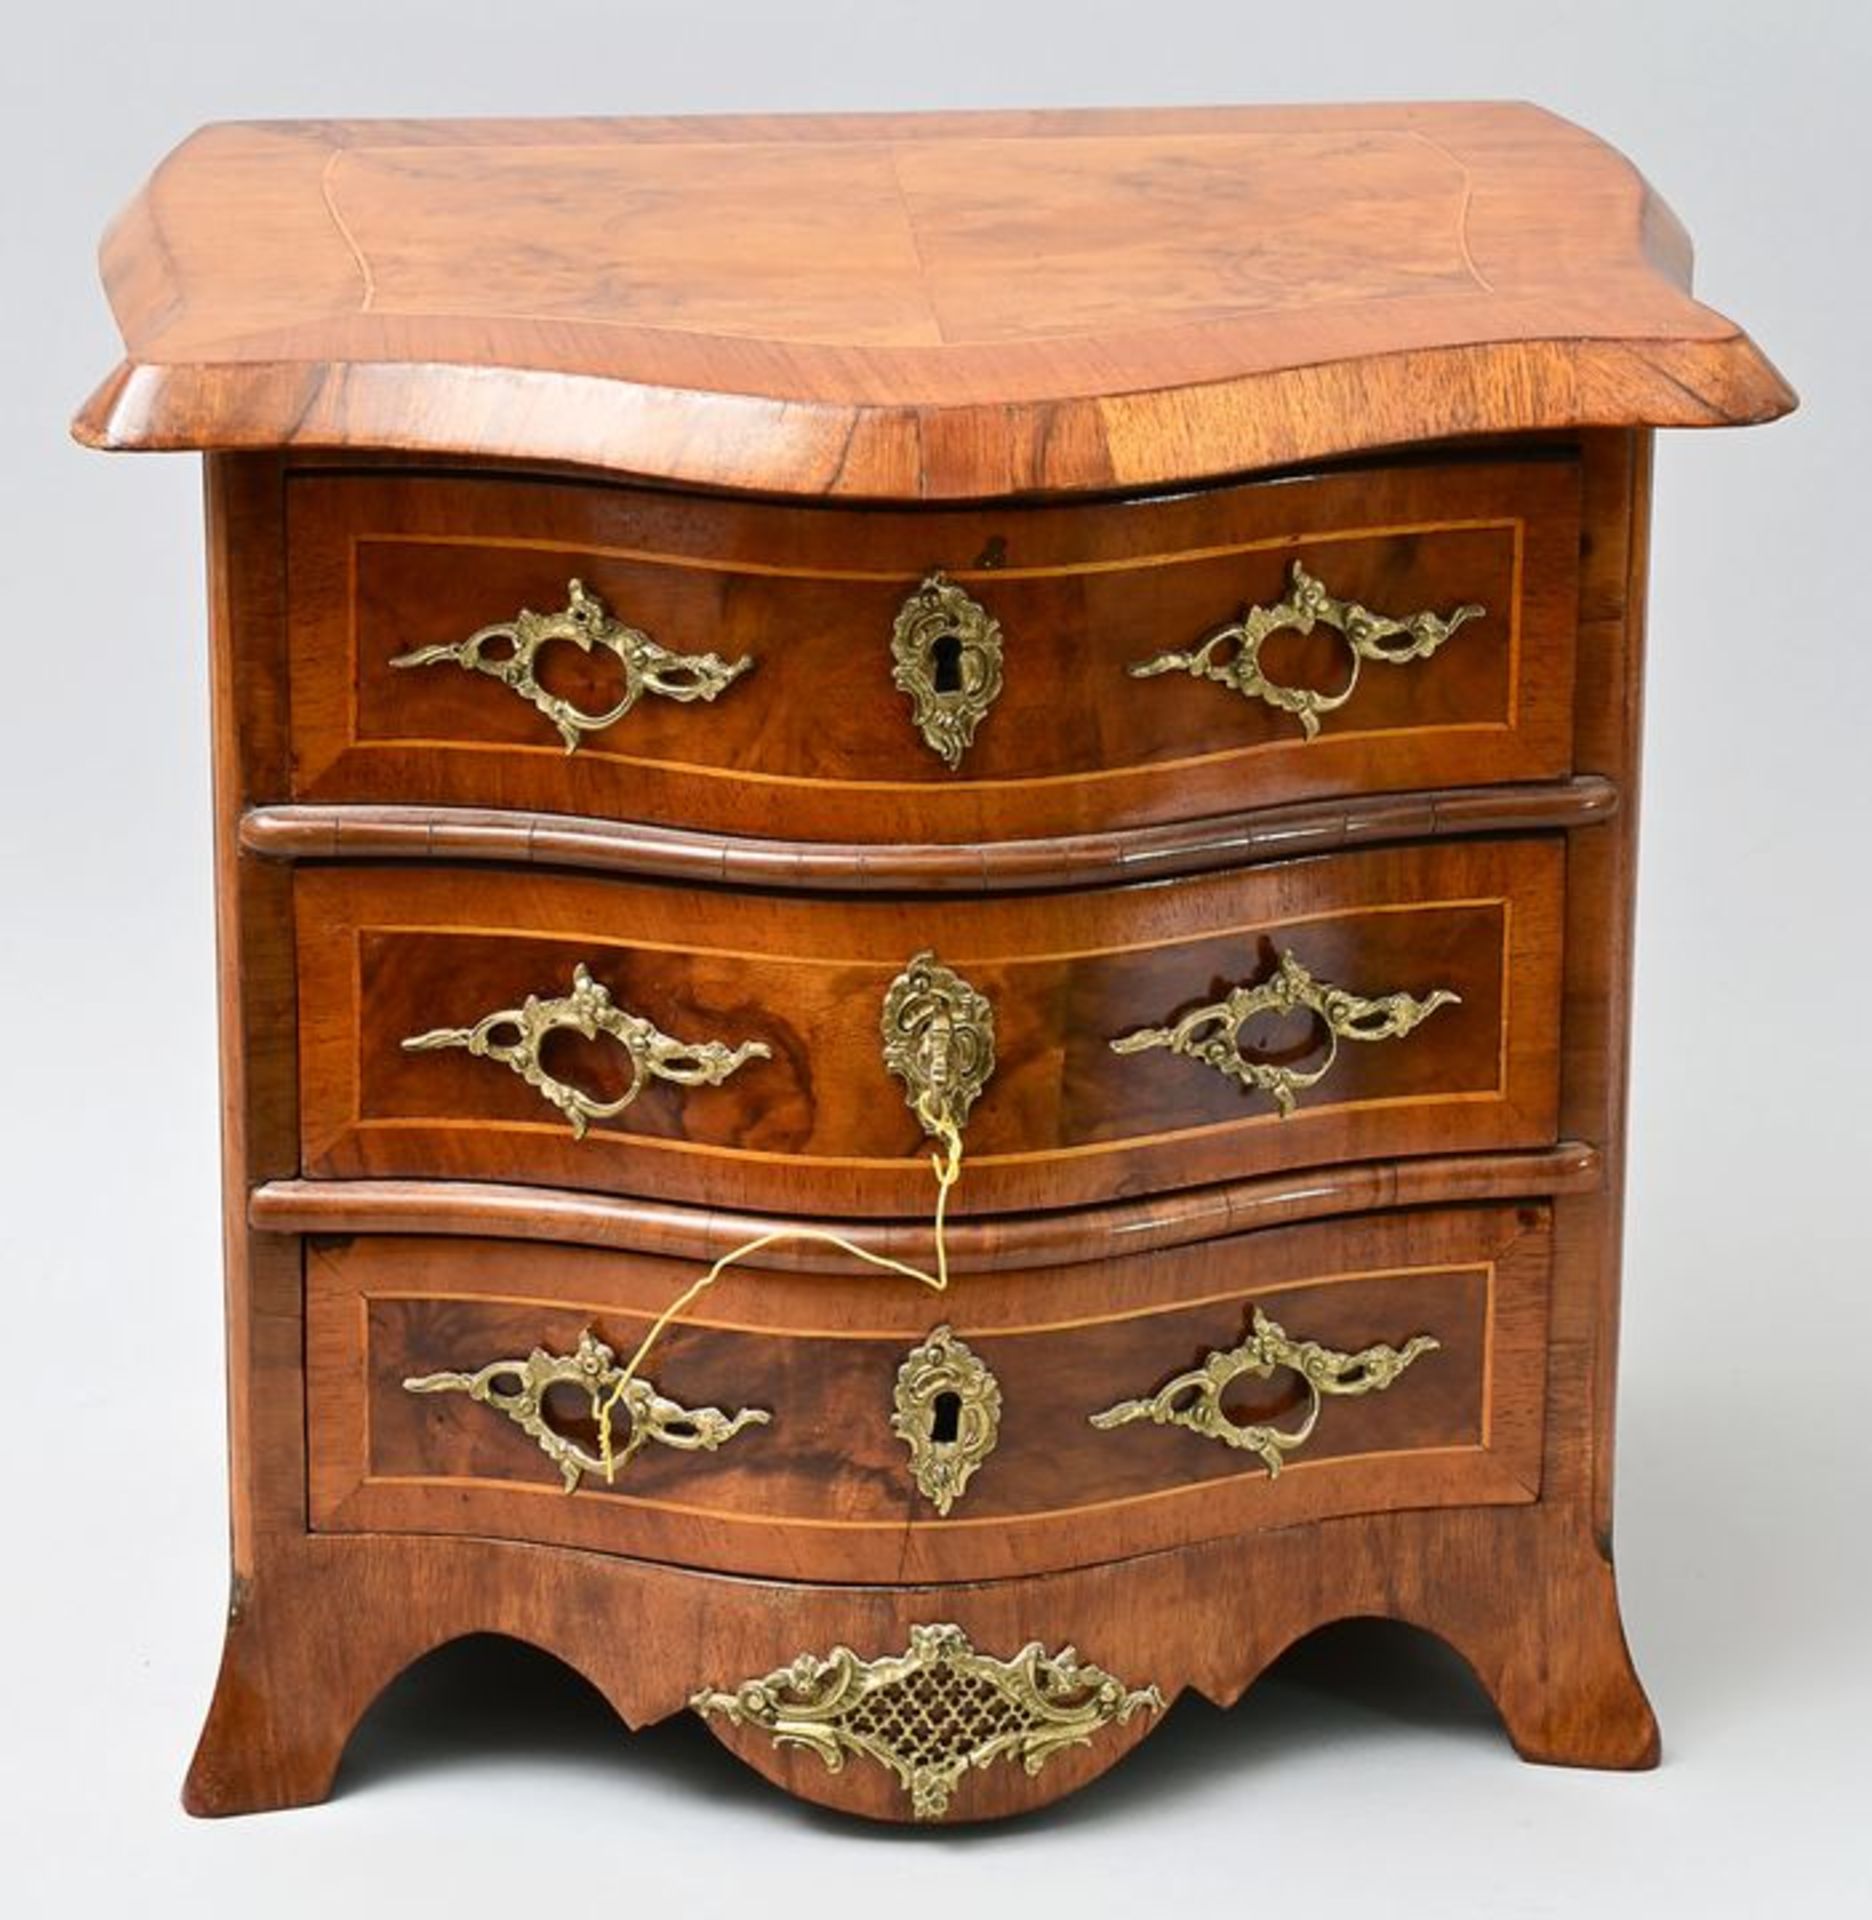 Modellkommode / model chest of drawers